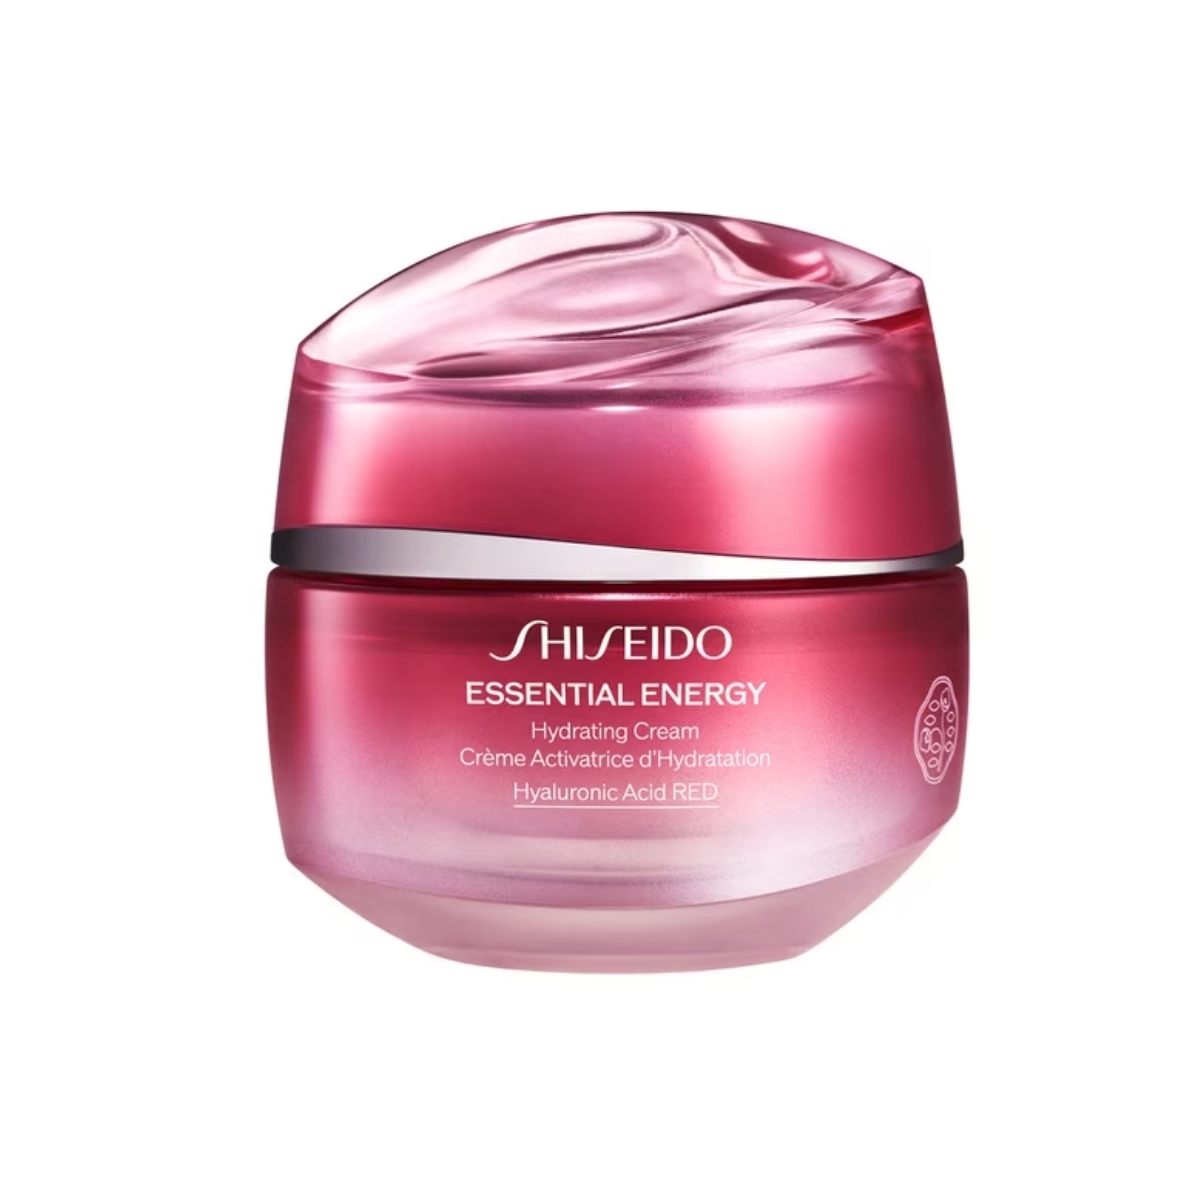 Essential Energy Hydrating Cream de Shiseido.